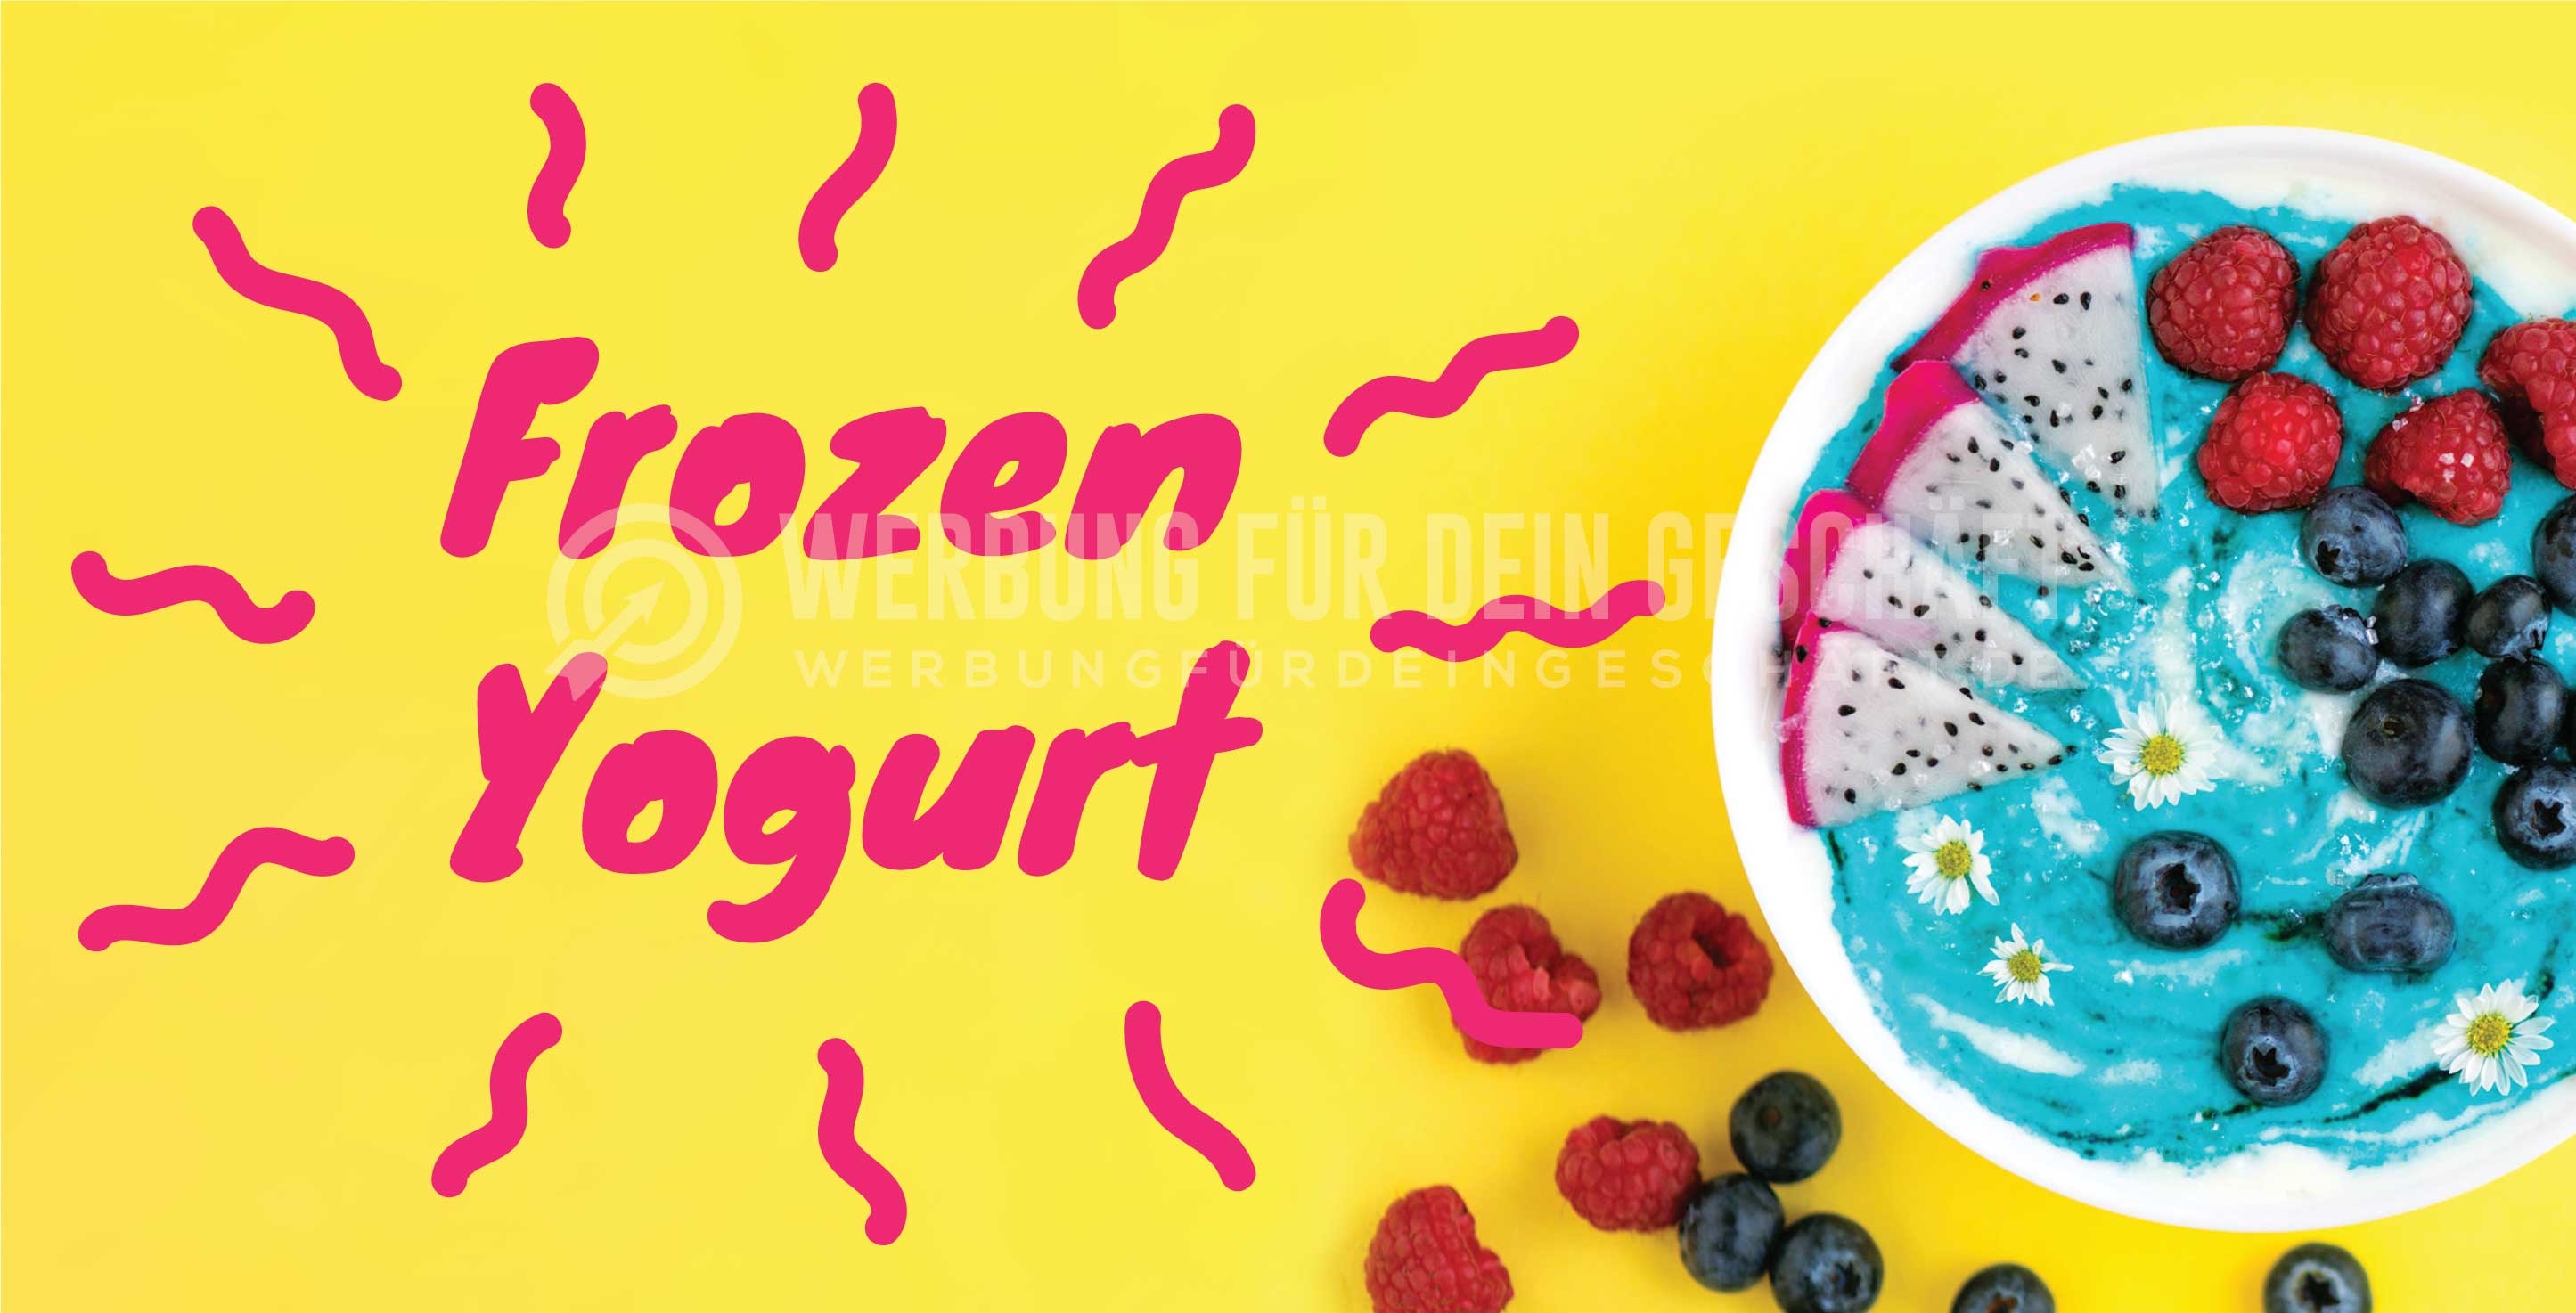 2:1 | Frozen Yogurt Plakat | Werbe-Poster für Frozen Yogurt | 2 zu 1 Format